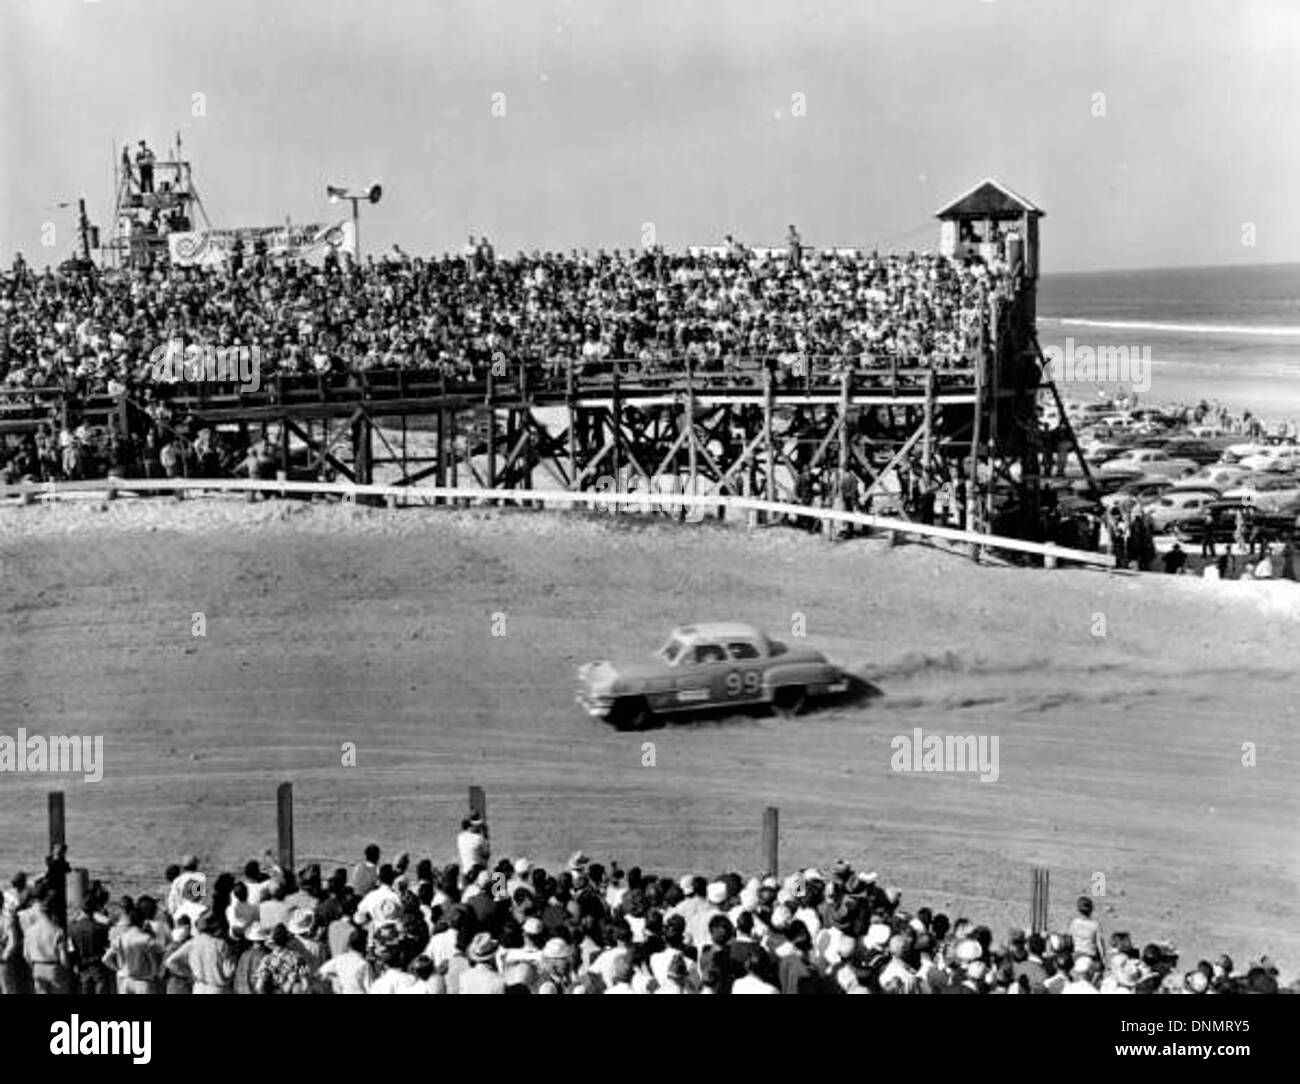 Stock car racing at Daytona Beach, Florida Stock Photo